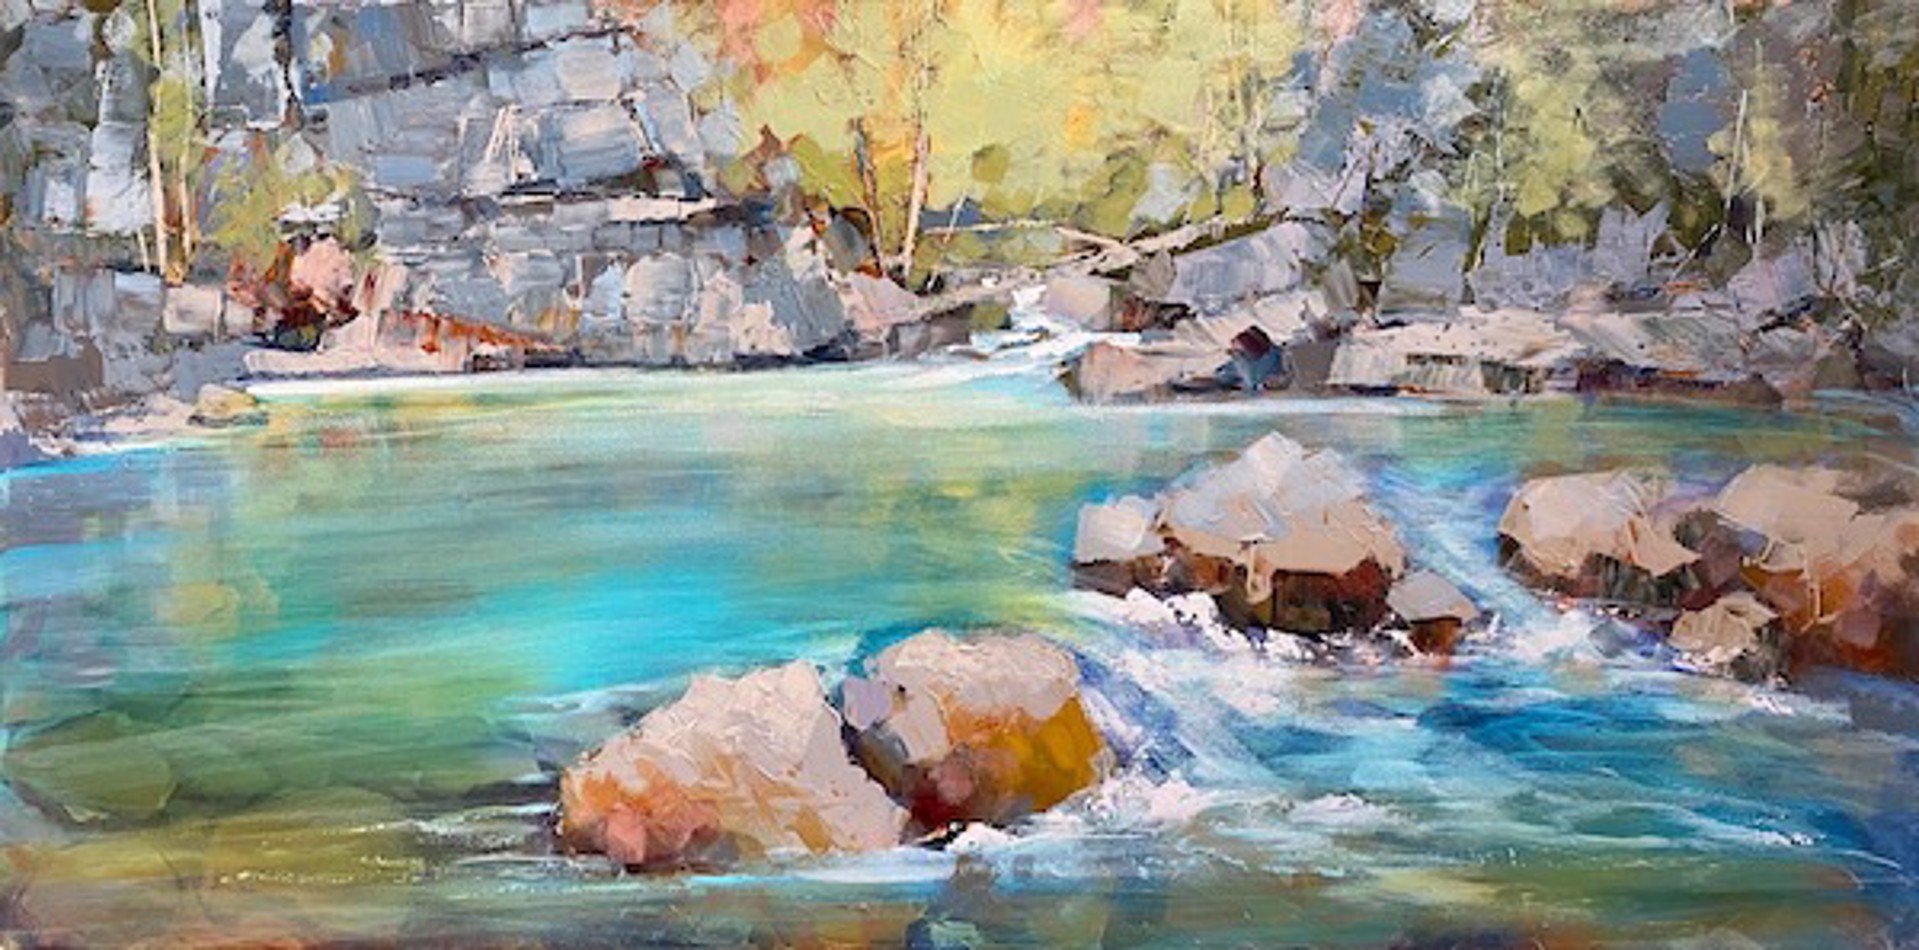 A River Runs Through It by Linda Wilder